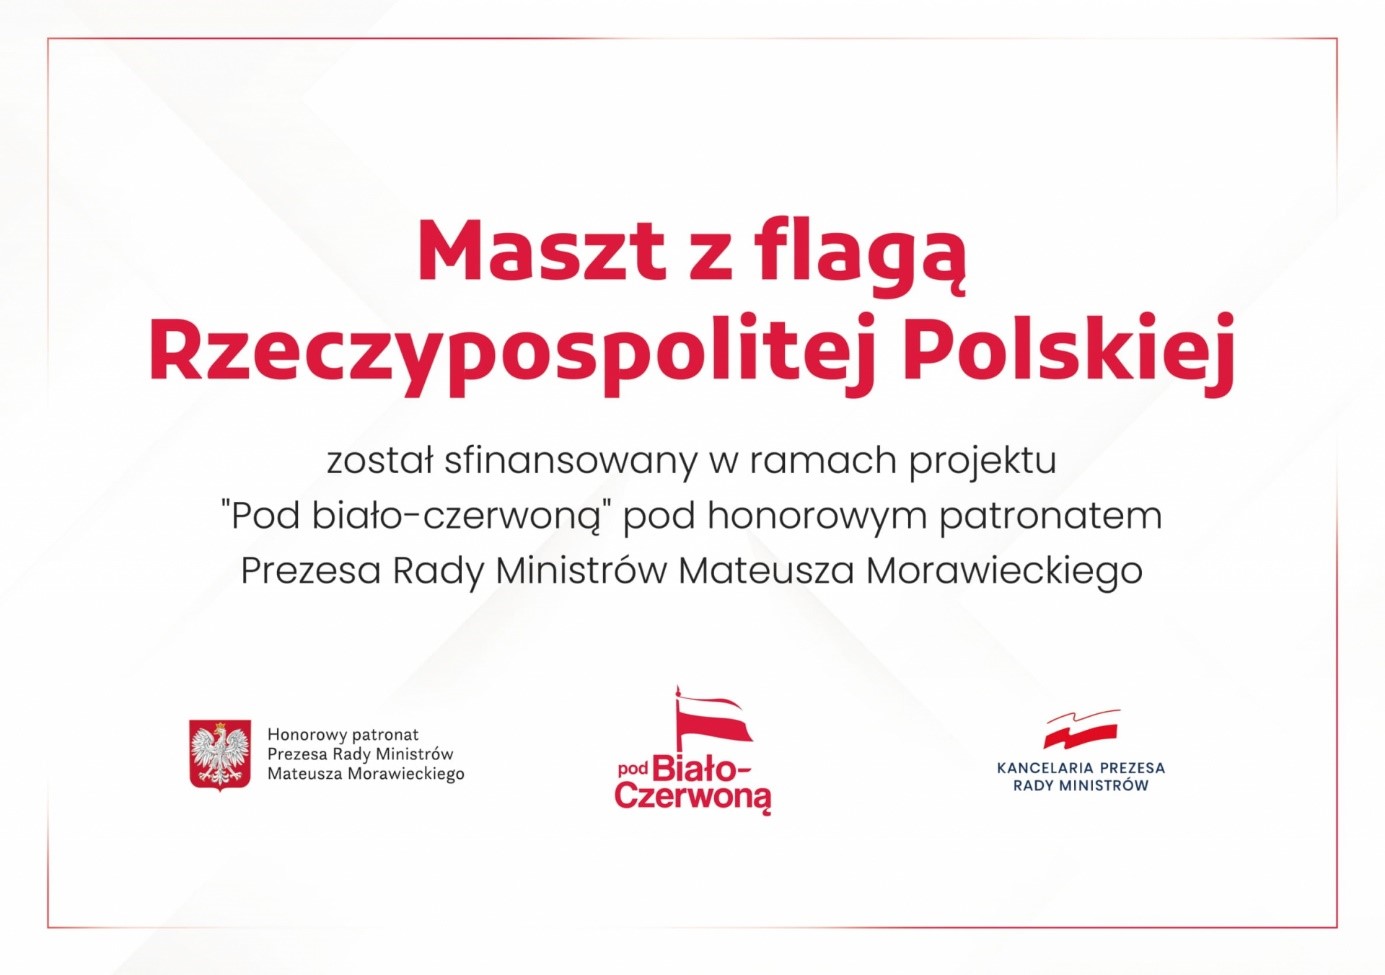 maszt z flagą rzeczypospolitej Polskiej został sfinansowany w ramach projektu "Pod biało-czerwoną" pod honorowym patronatem Prezesa Rady Ministrów Mateusza Morawieckiego